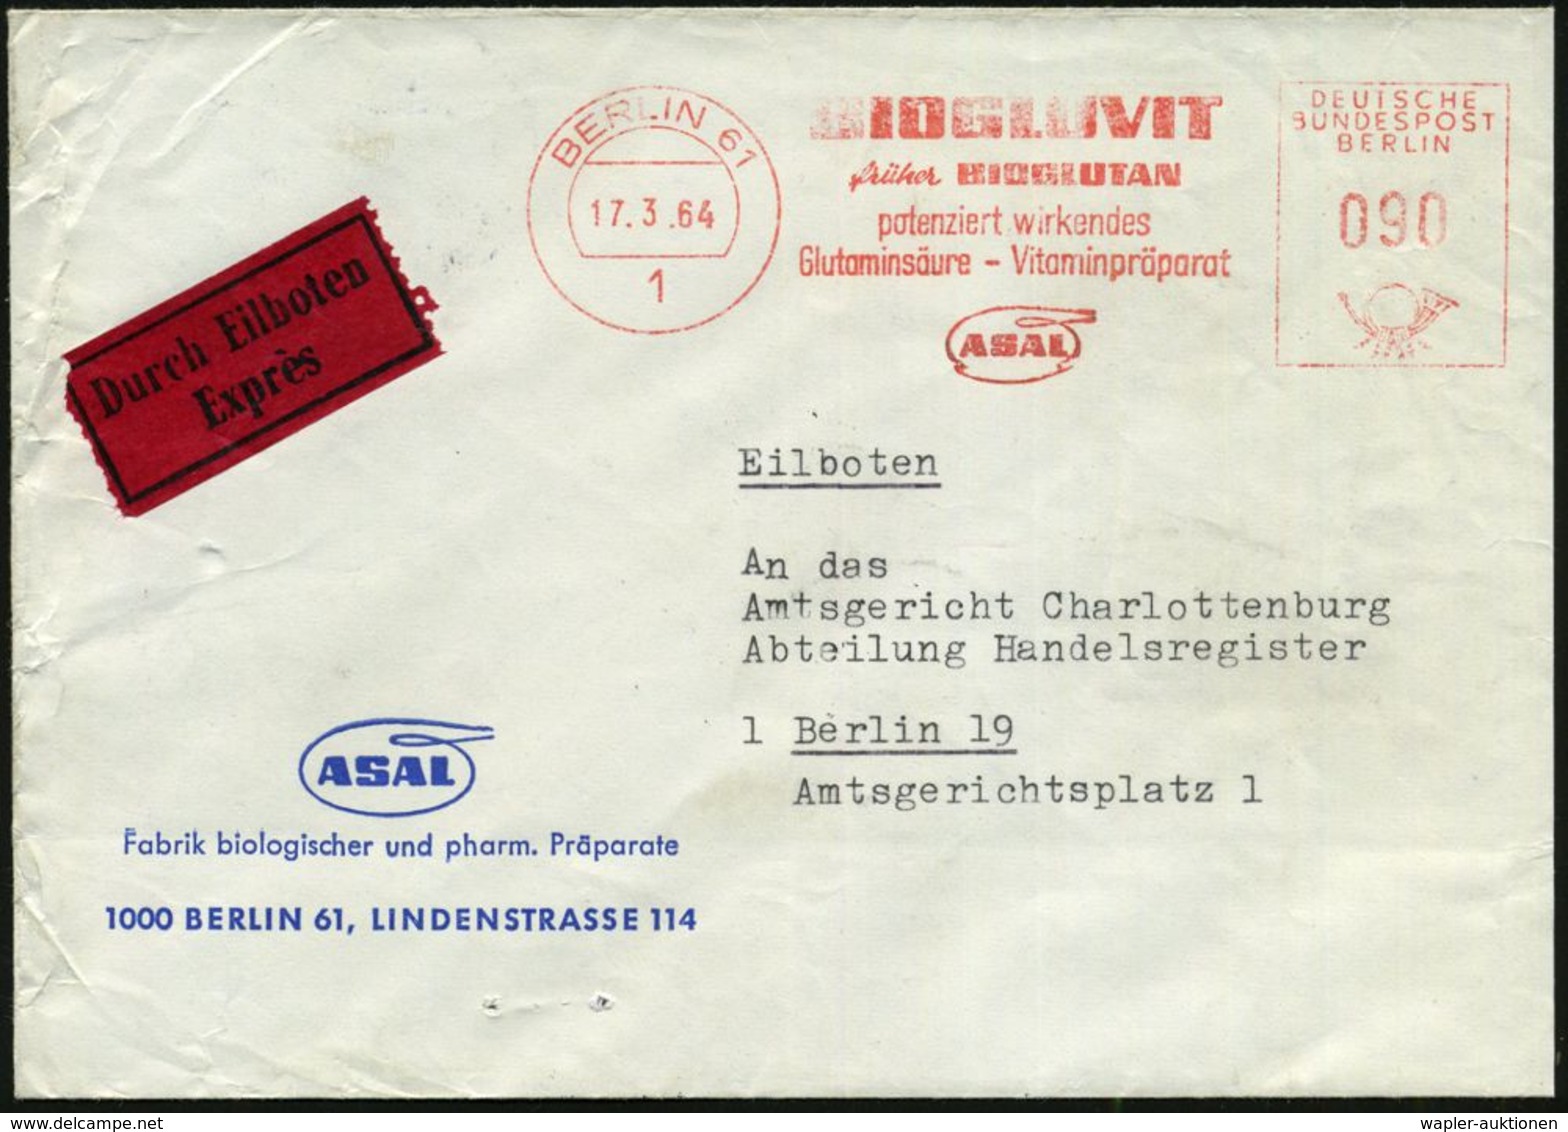 HOMÖOPATHIE / HEILPFLANZEN : 1 BERLIN 61/ BIOGLUVIT/ Früher BIOGLUTAN/ ..Glutaminsäure-Vitaminpräparat/ ASAL 1964 (17.3. - Médecine